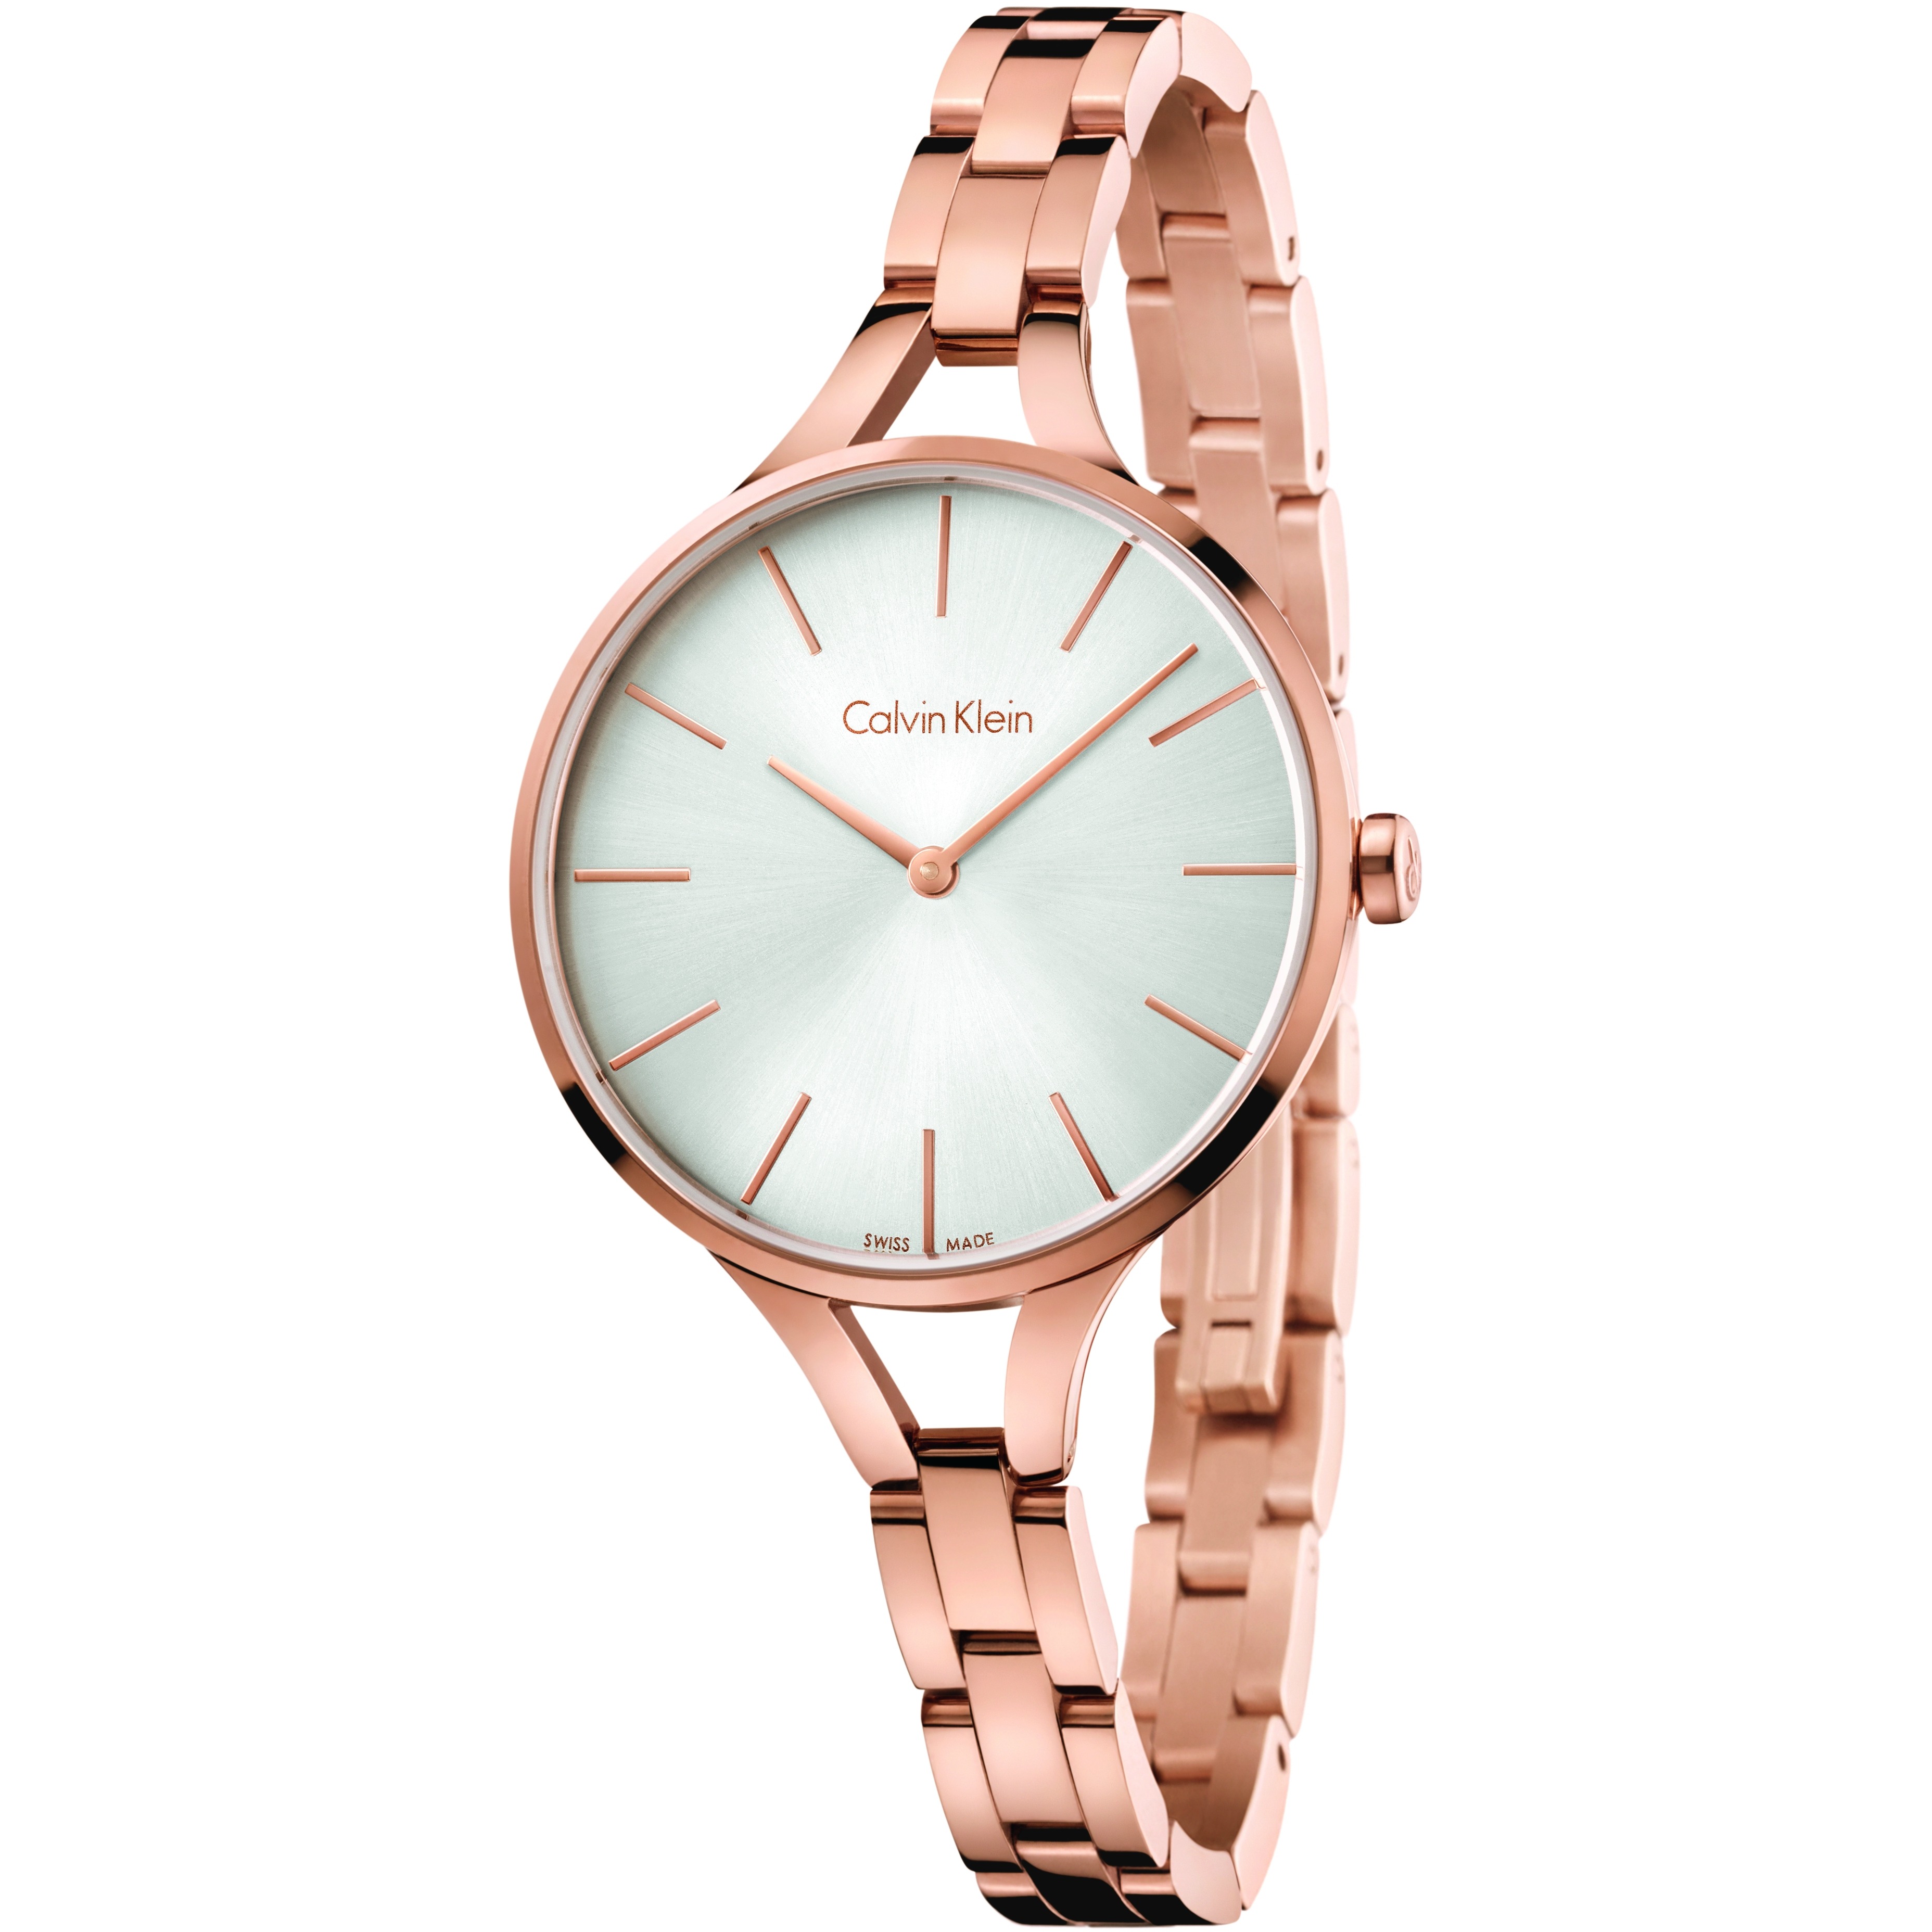 Relógio Calvin Klein, disponível na Boutique dos Relógios.